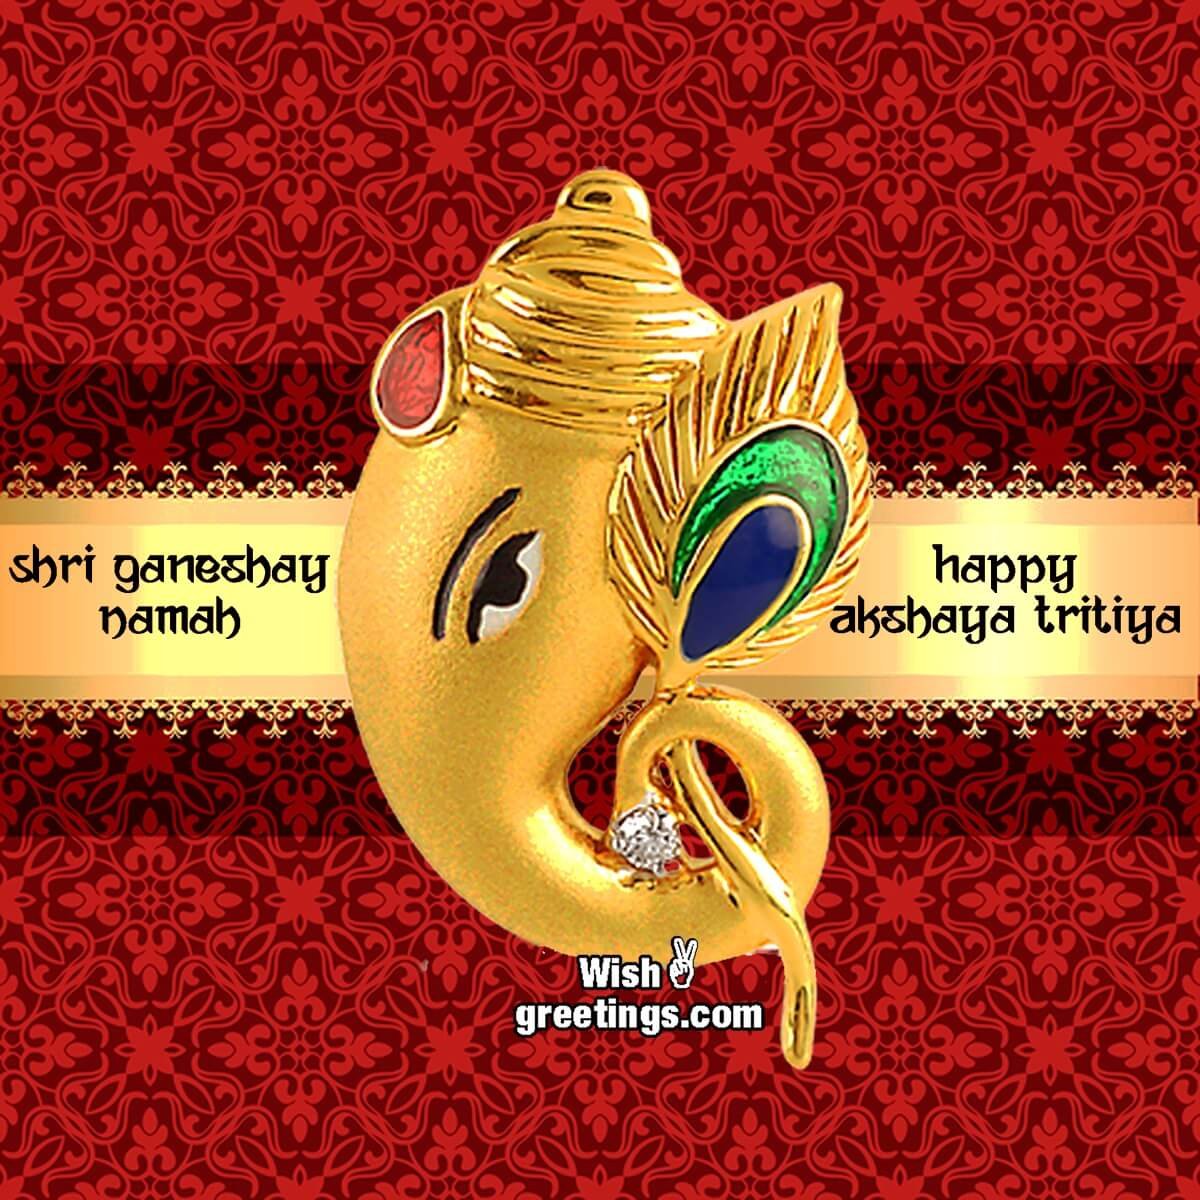 Happy Akshaya Trithiya – Shri Ganeshay Namah